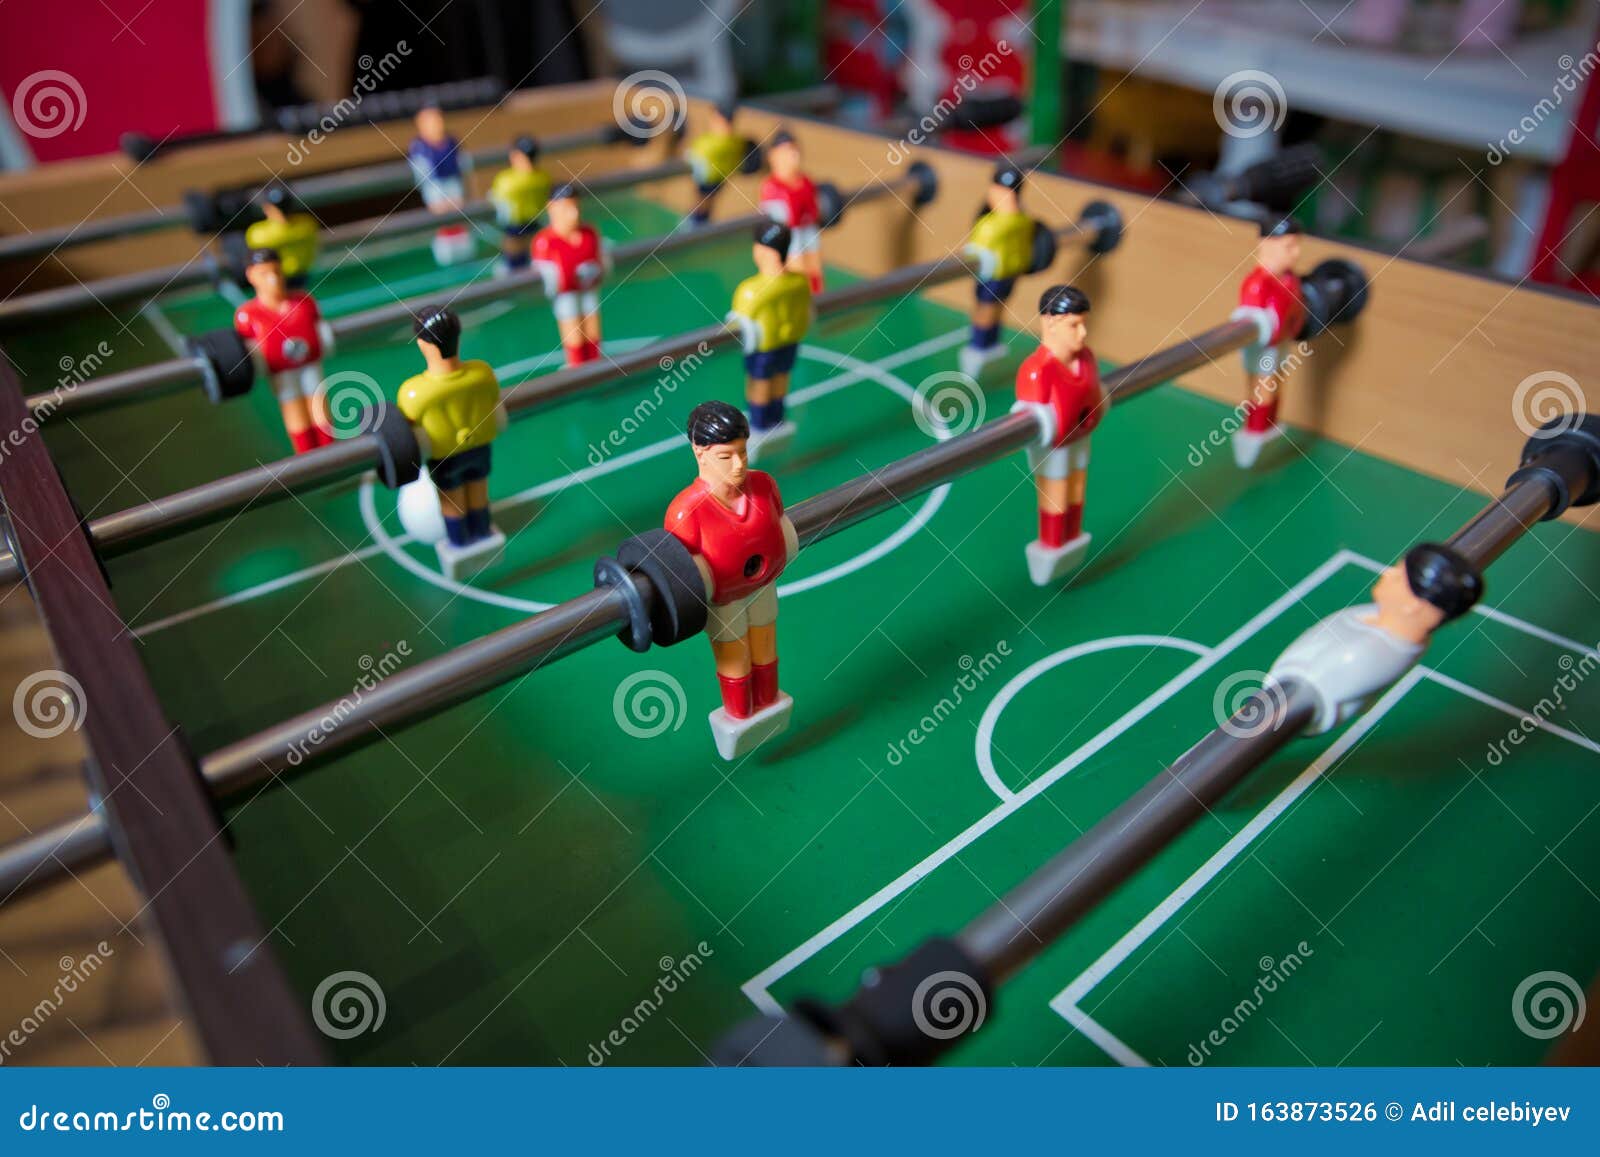 Generic Le baby-foot géant : une mini table de jeu de football